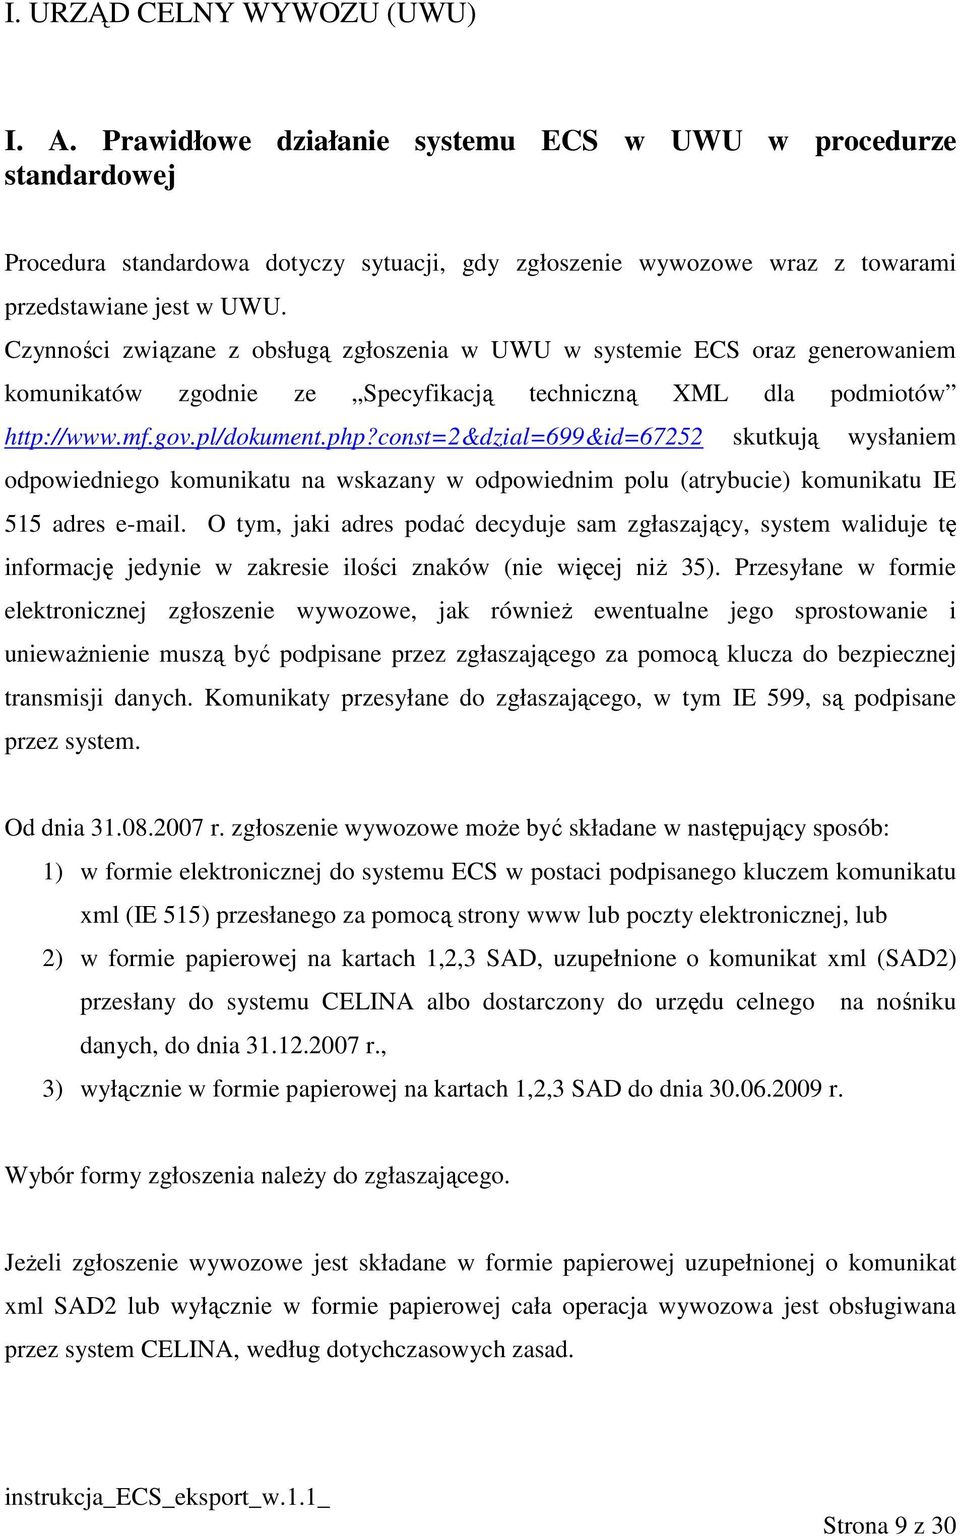 Czynności związane z obsługą zgłoszenia w UWU w systemie ECS oraz generowaniem komunikatów zgodnie ze Specyfikacją techniczną XML dla podmiotów http://www.mf.gov.pl/dokument.php?